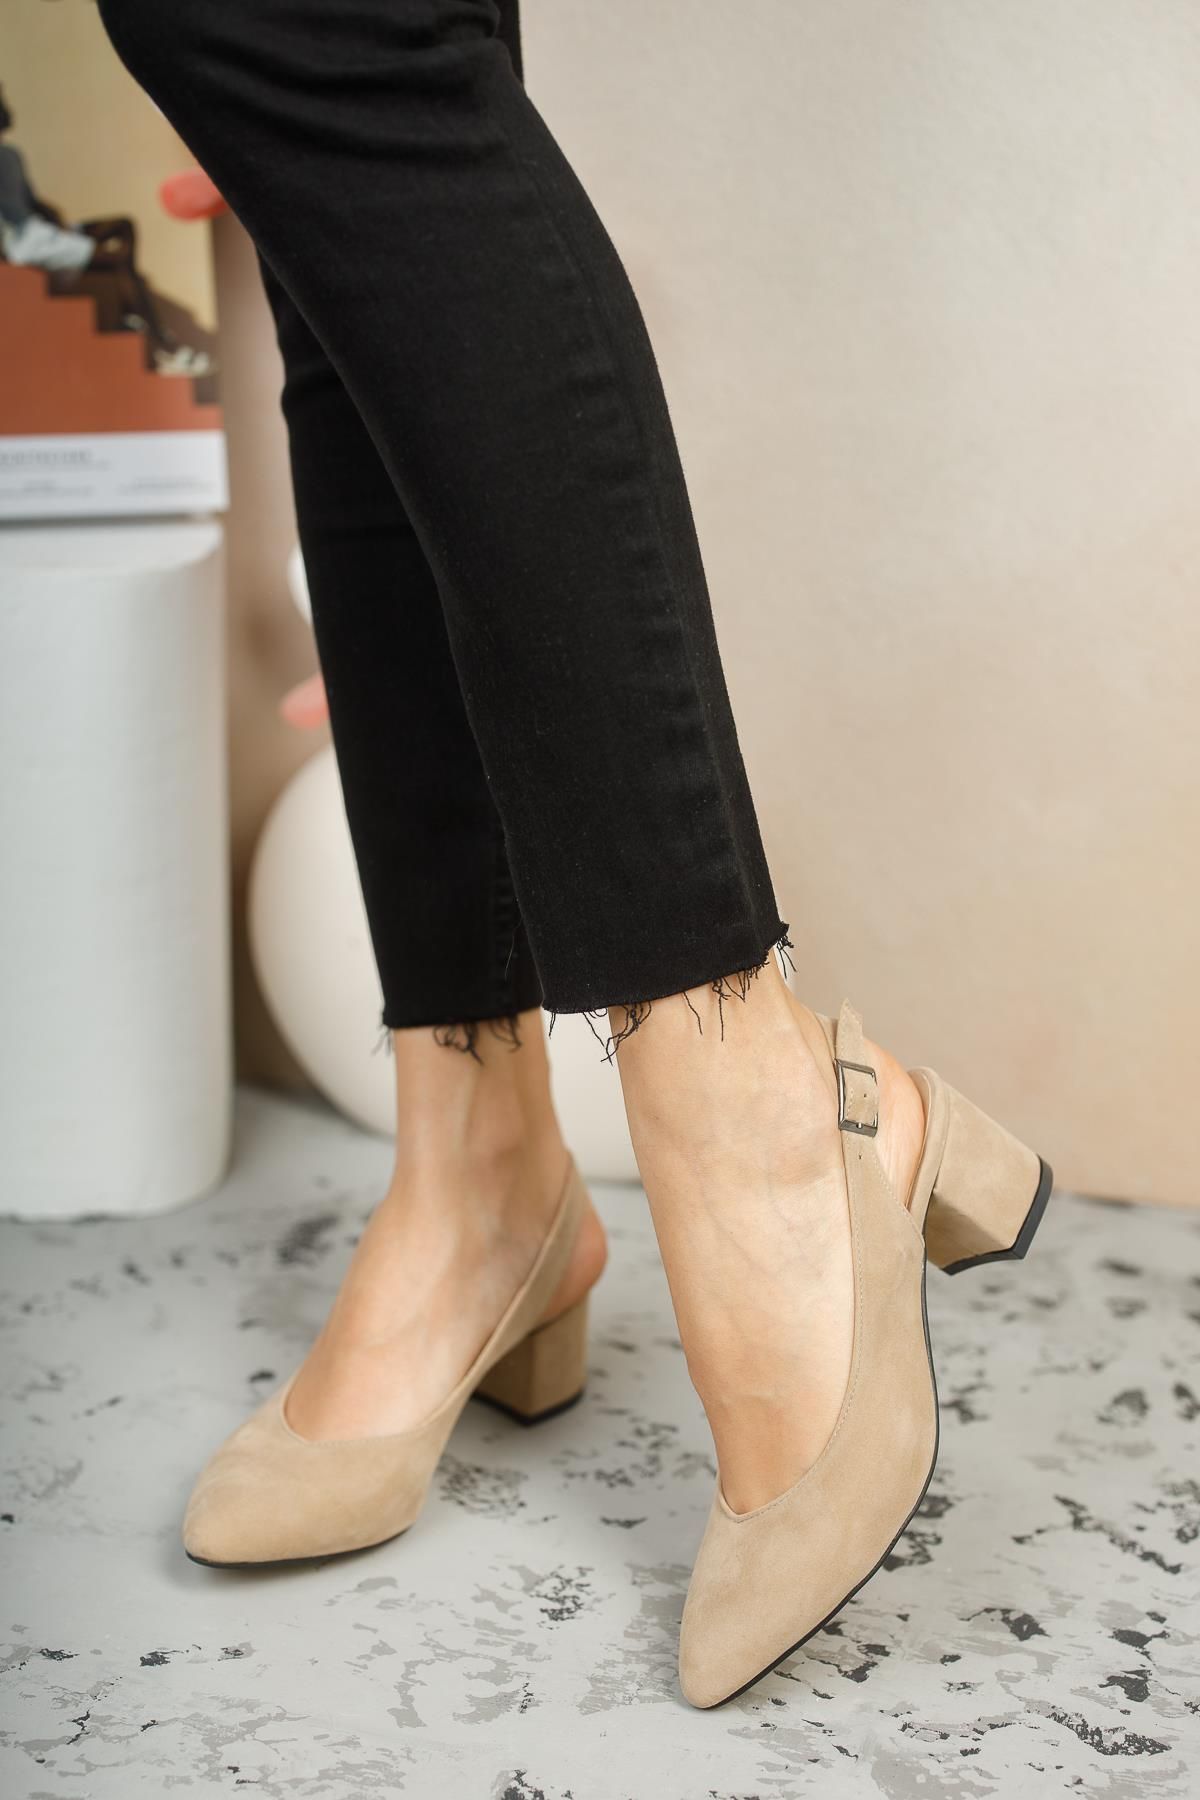 Muggo Gzhw711 Garantili Kadın Arkası Açık Klasik Günlük Tarz Şık Ve Rahat Topuklu Ayakkabı